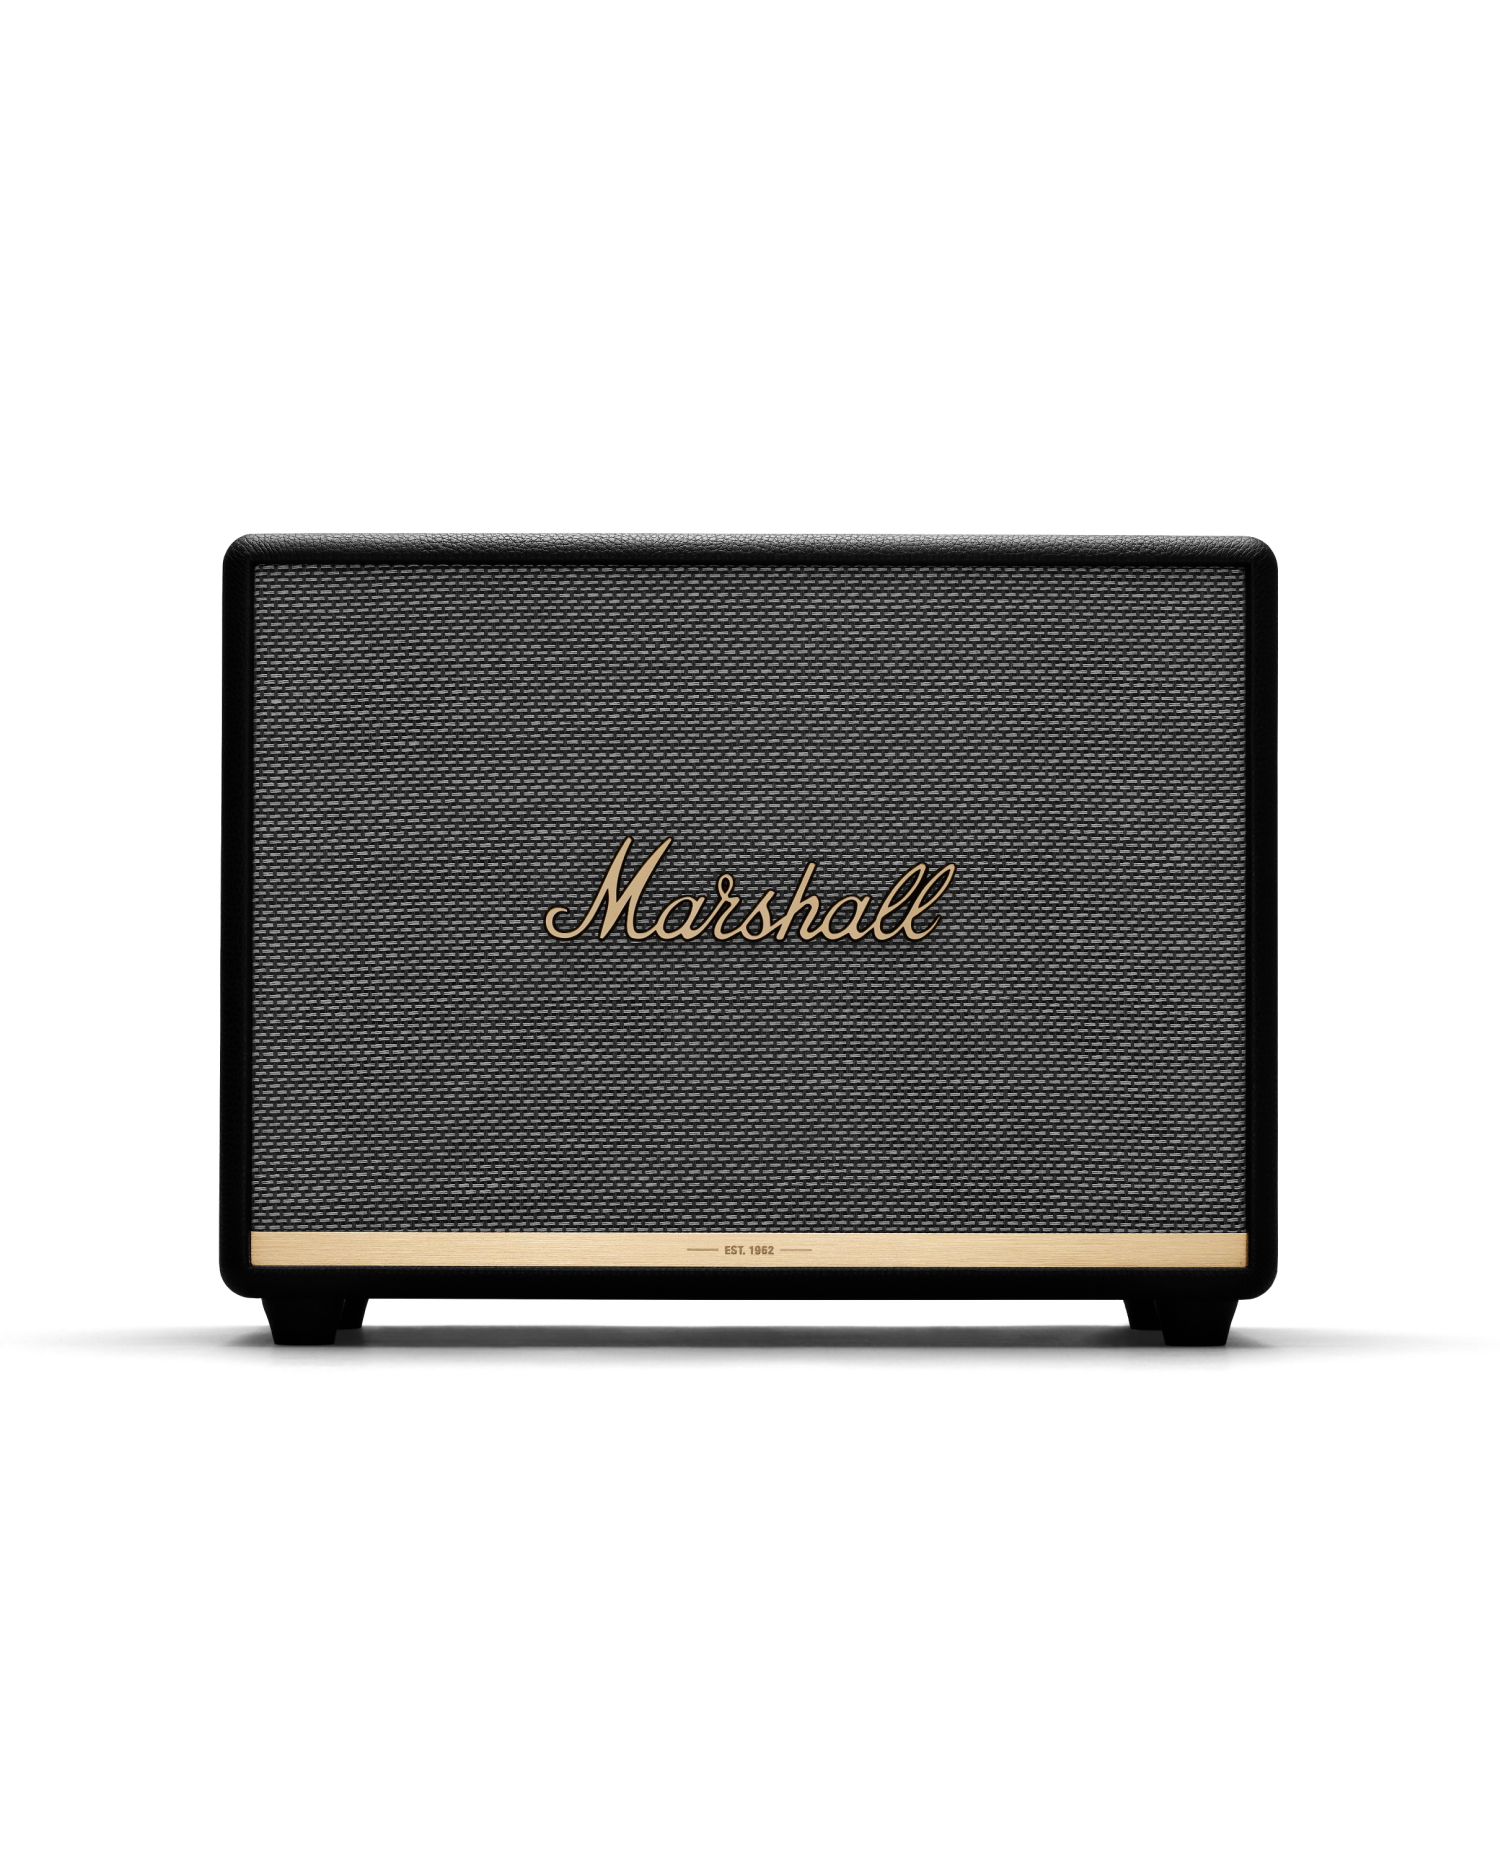 Marshall Woburn III Bluetooth Speaker – Bealtag